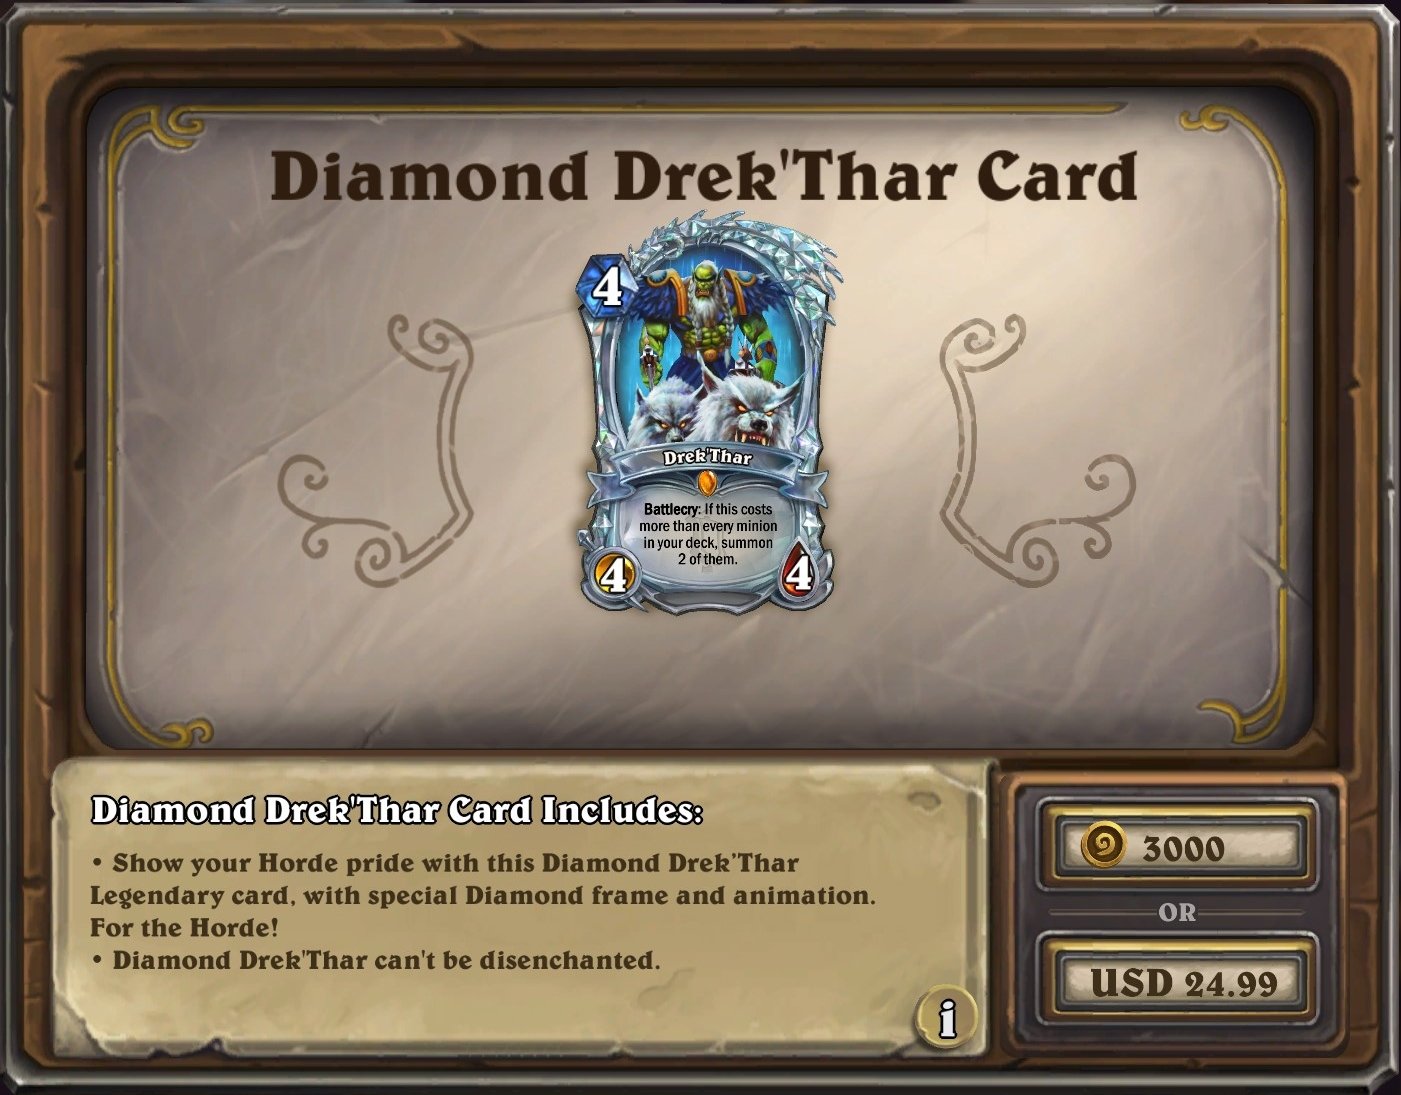 The diamond Drek'Thar card on sale for $24.99